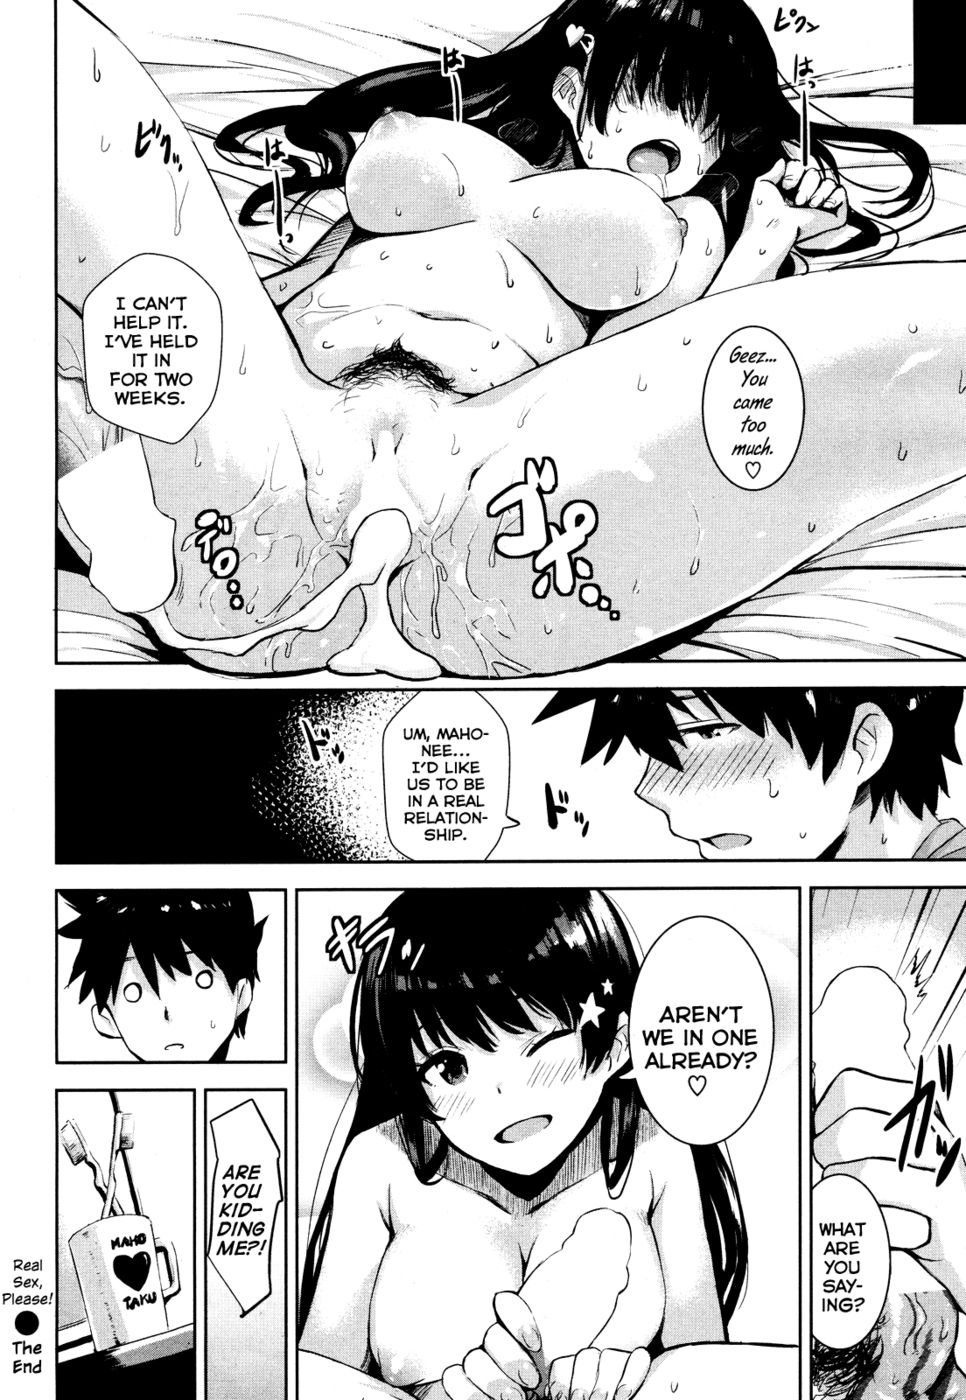 Hentai Manga Comic-Real Sex, Please!-Read-18